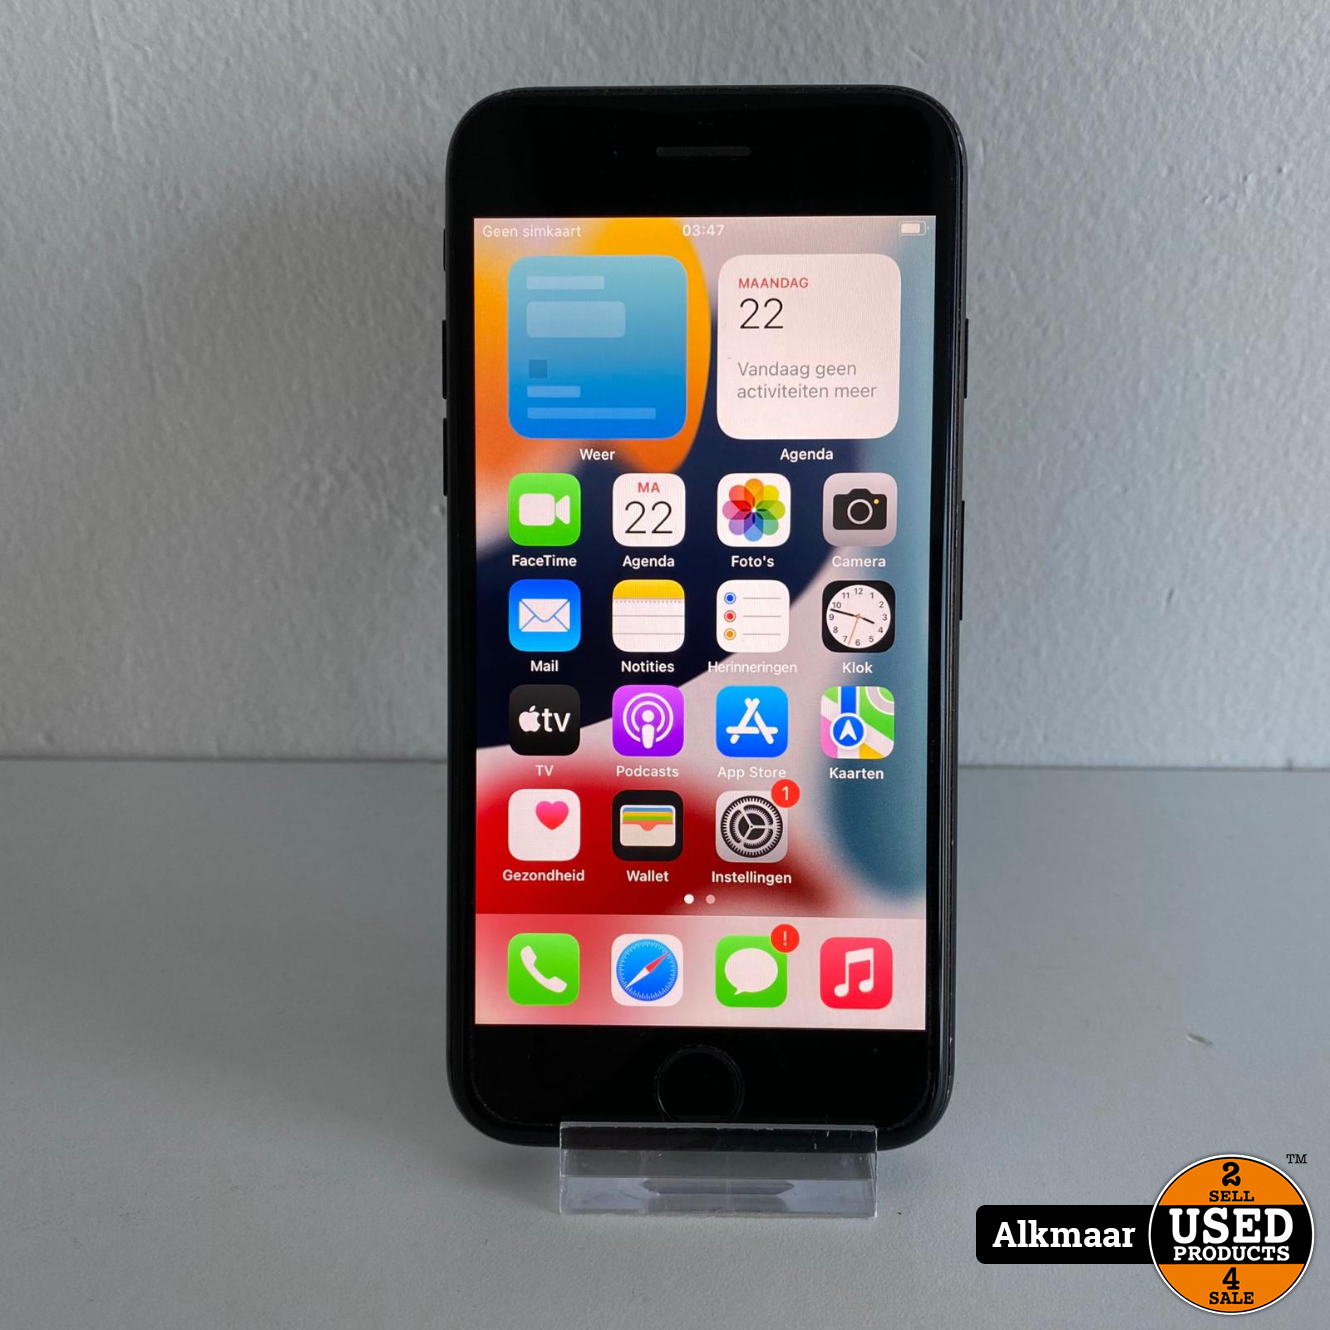 Uil bestrating ui Apple iPhone 7 32GB zwart | Gebruikt - Used Products Alkmaar